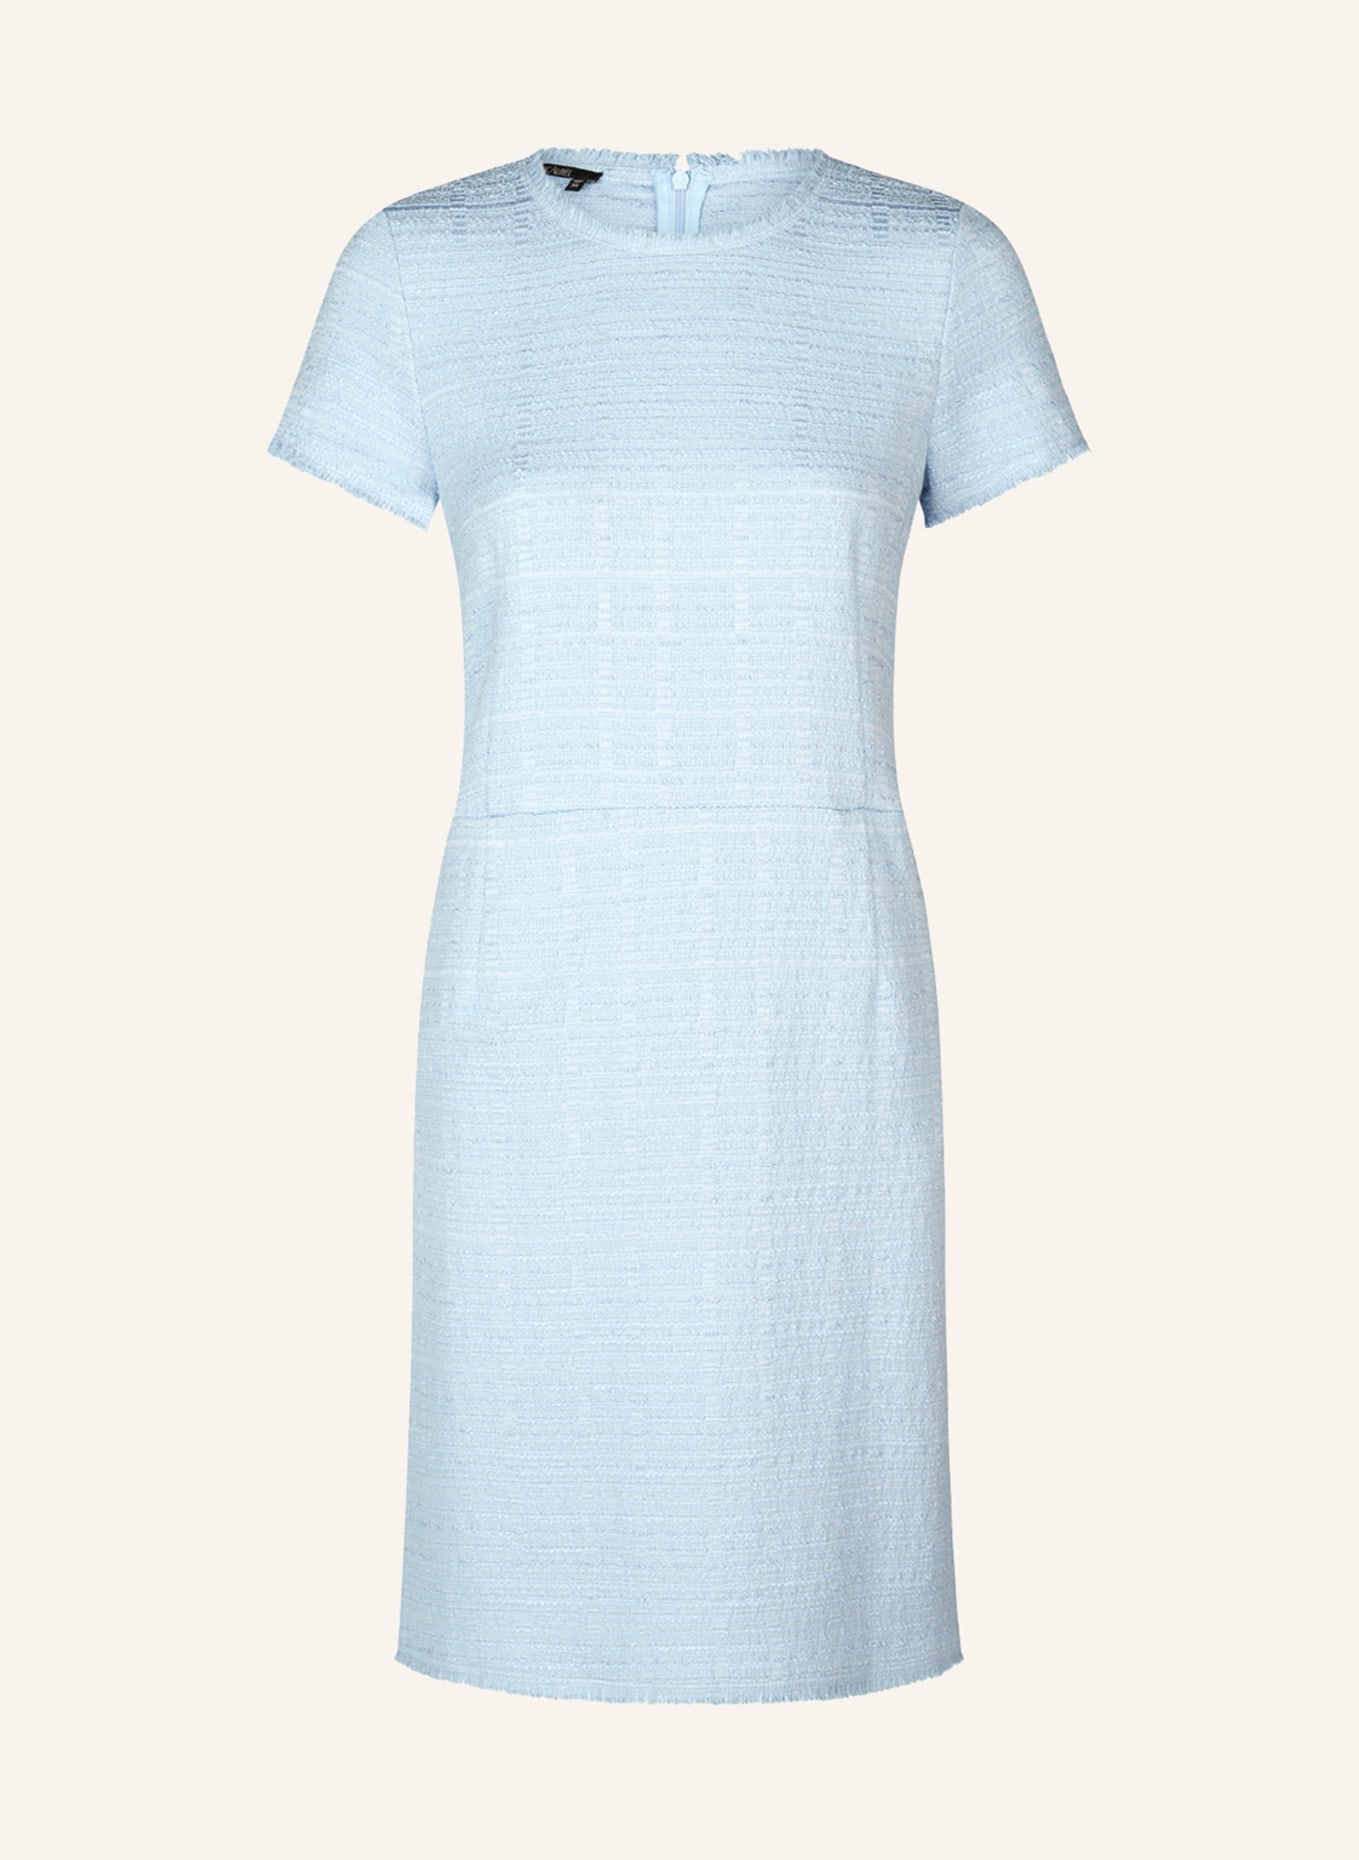 MARC AUREL Kleid, Farbe: HELLBLAU (Bild 1)